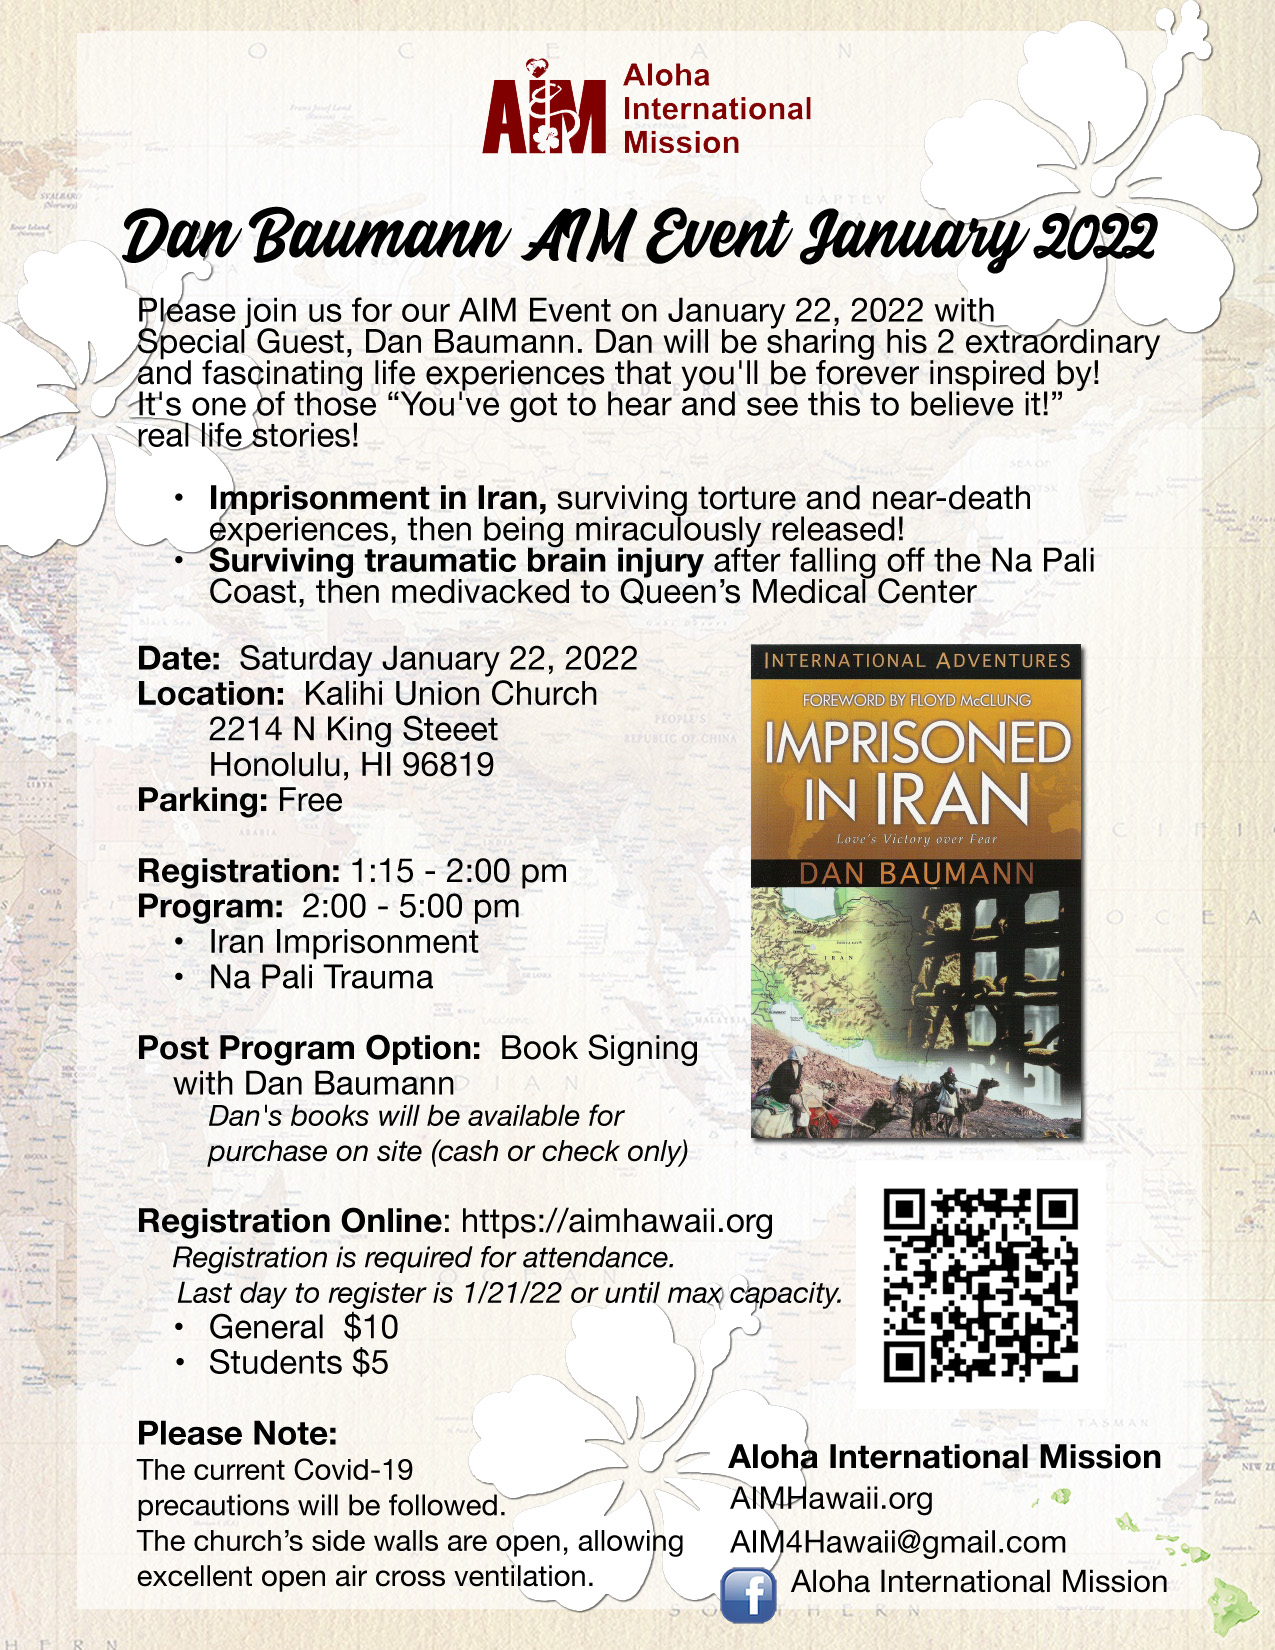 AIM Event January 2022 with Dan Baumann